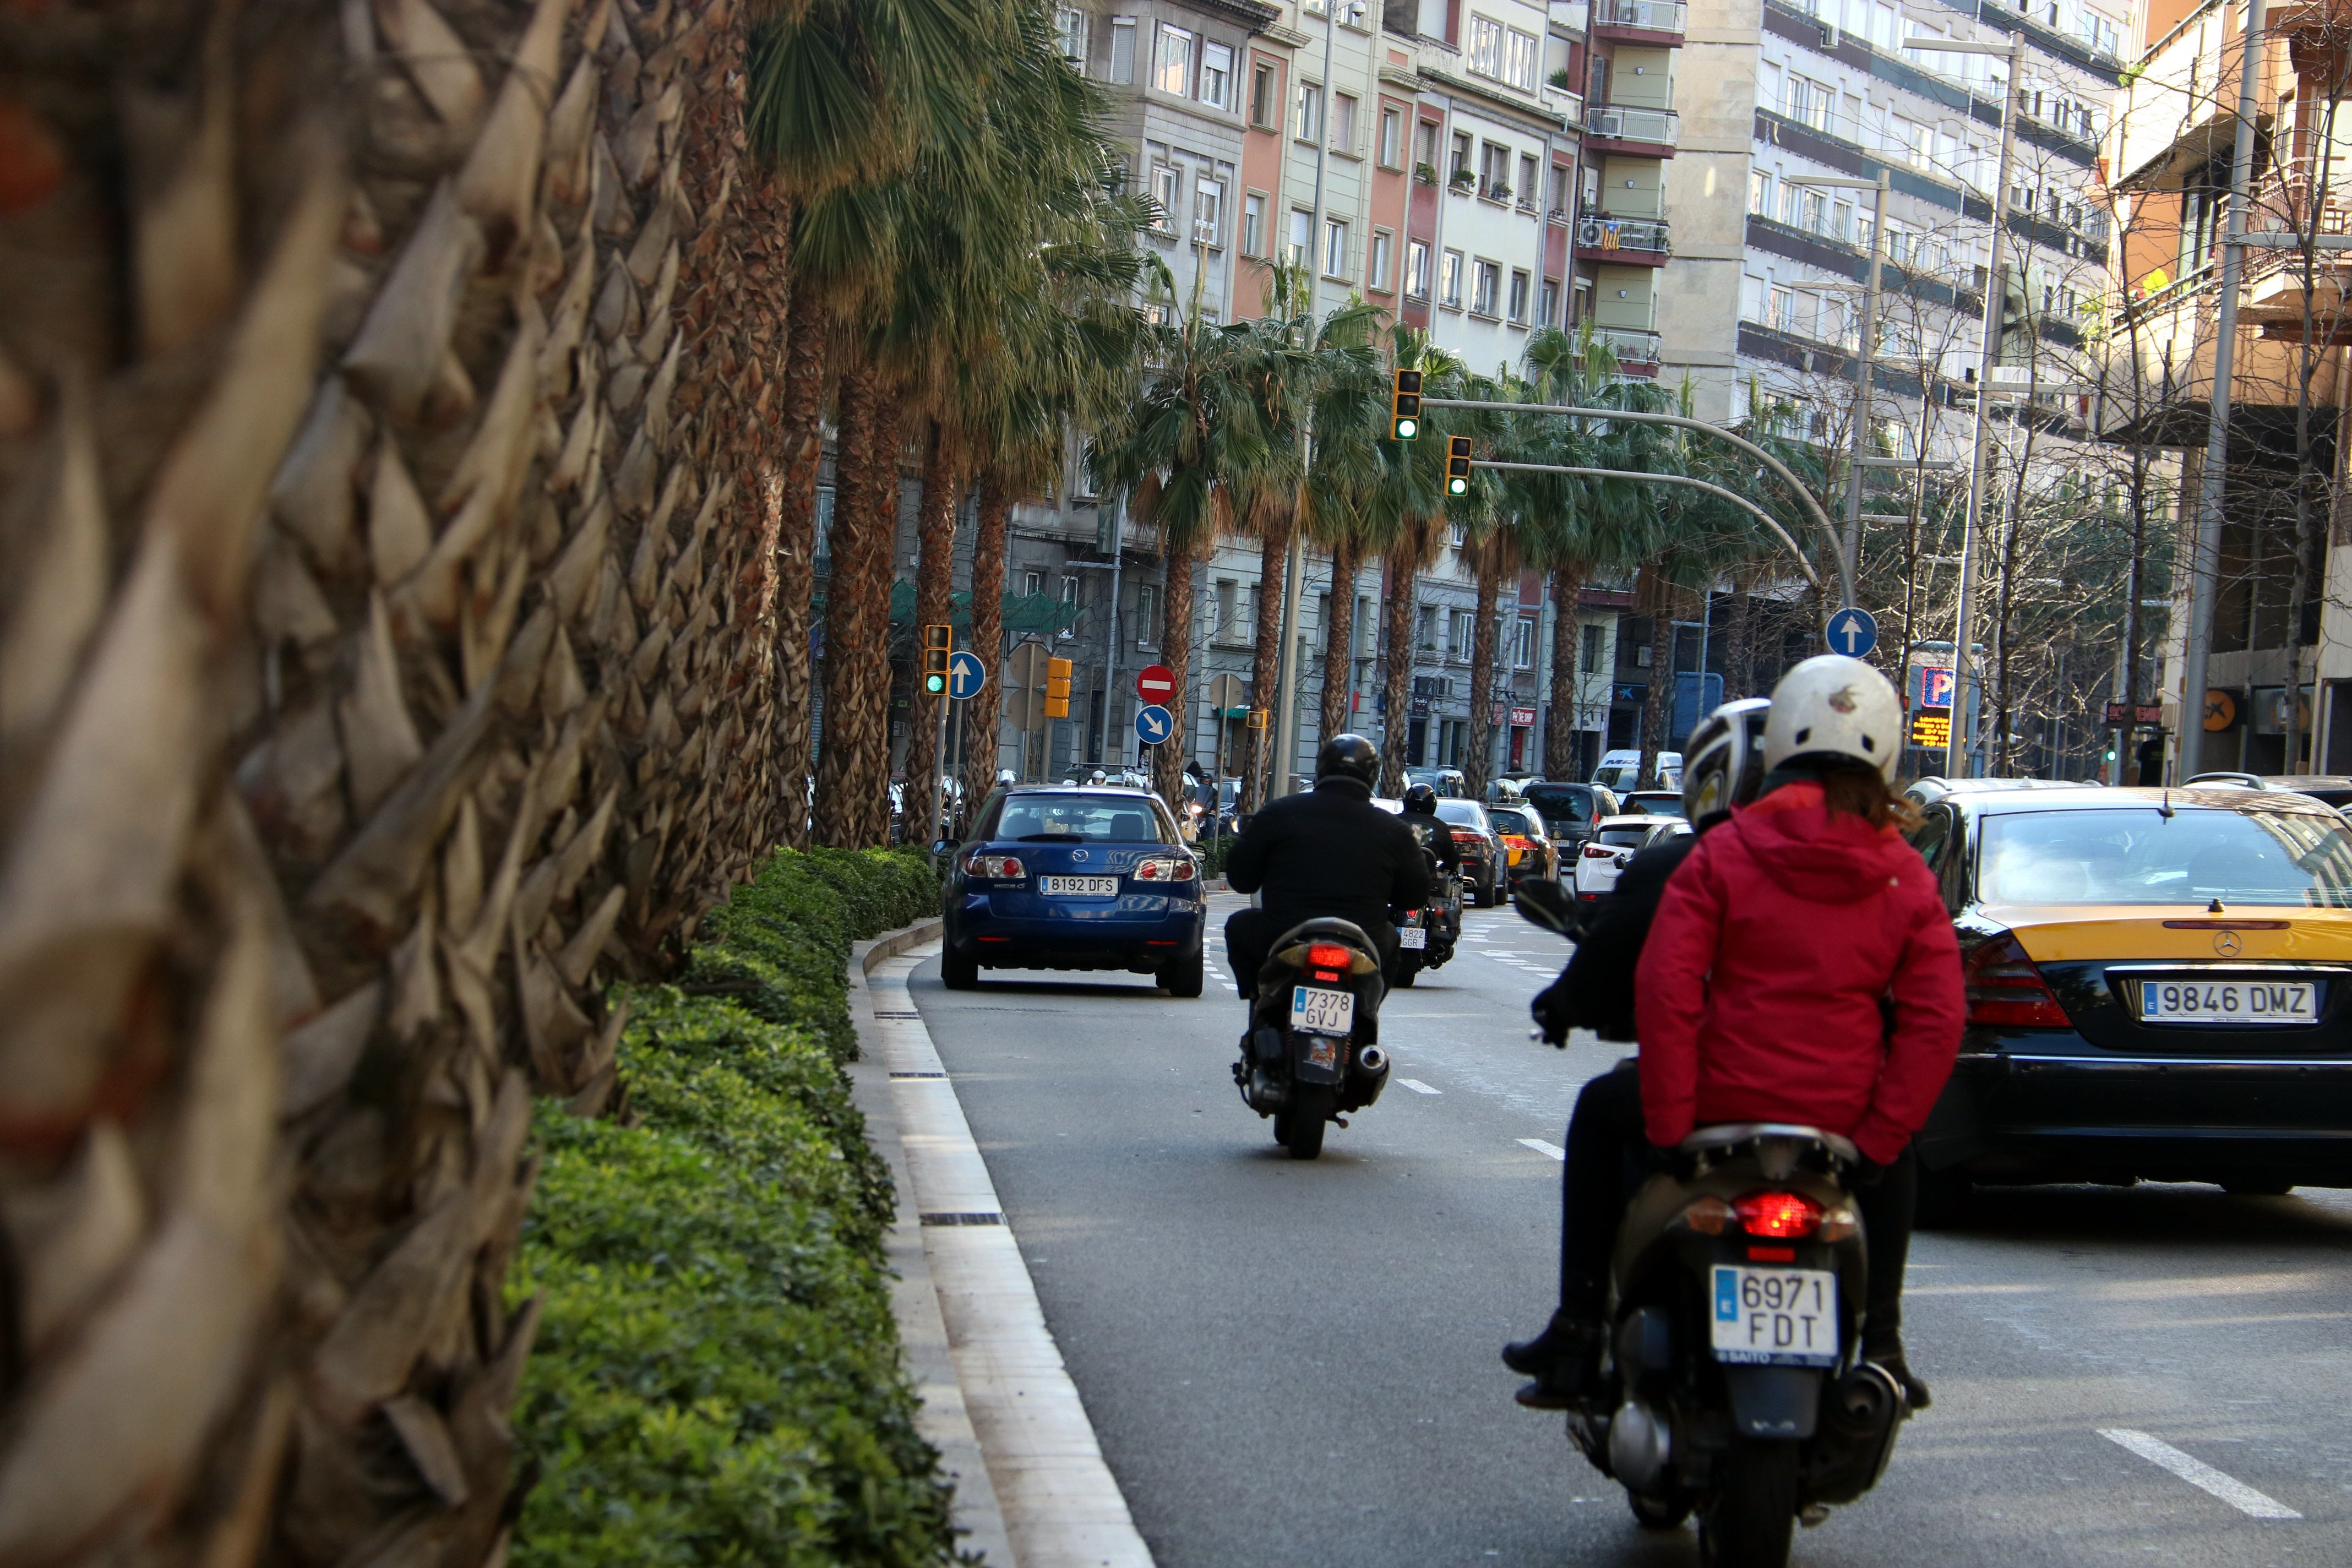 Sanció a Acciona per habilitar motocicletes d'ús compartit sense llicències